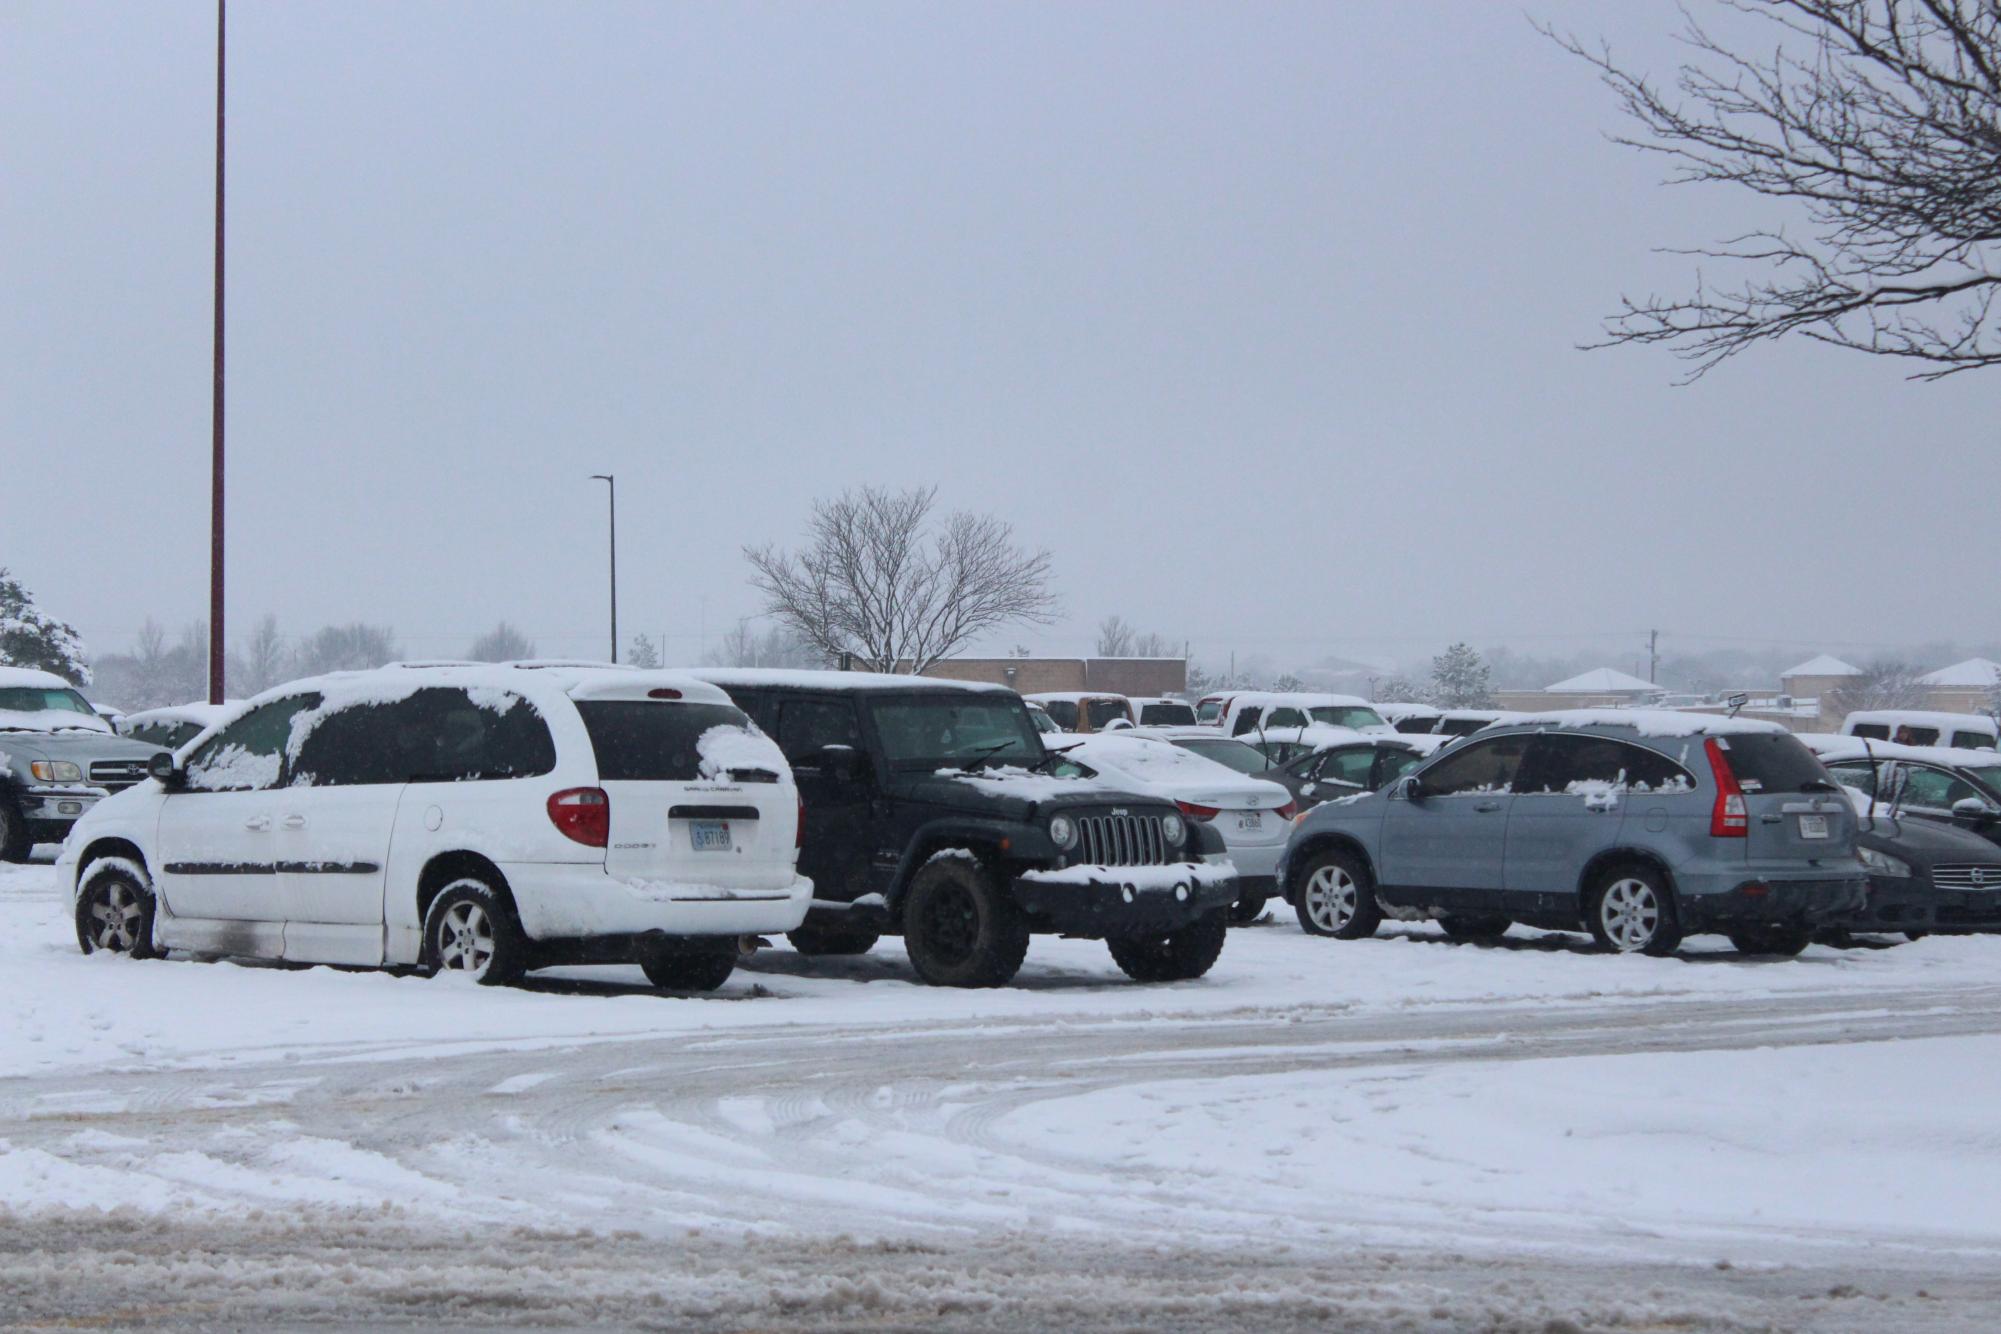 Snowy+parking+lot+%28Photos+by+Alyssa+Schroeder%29